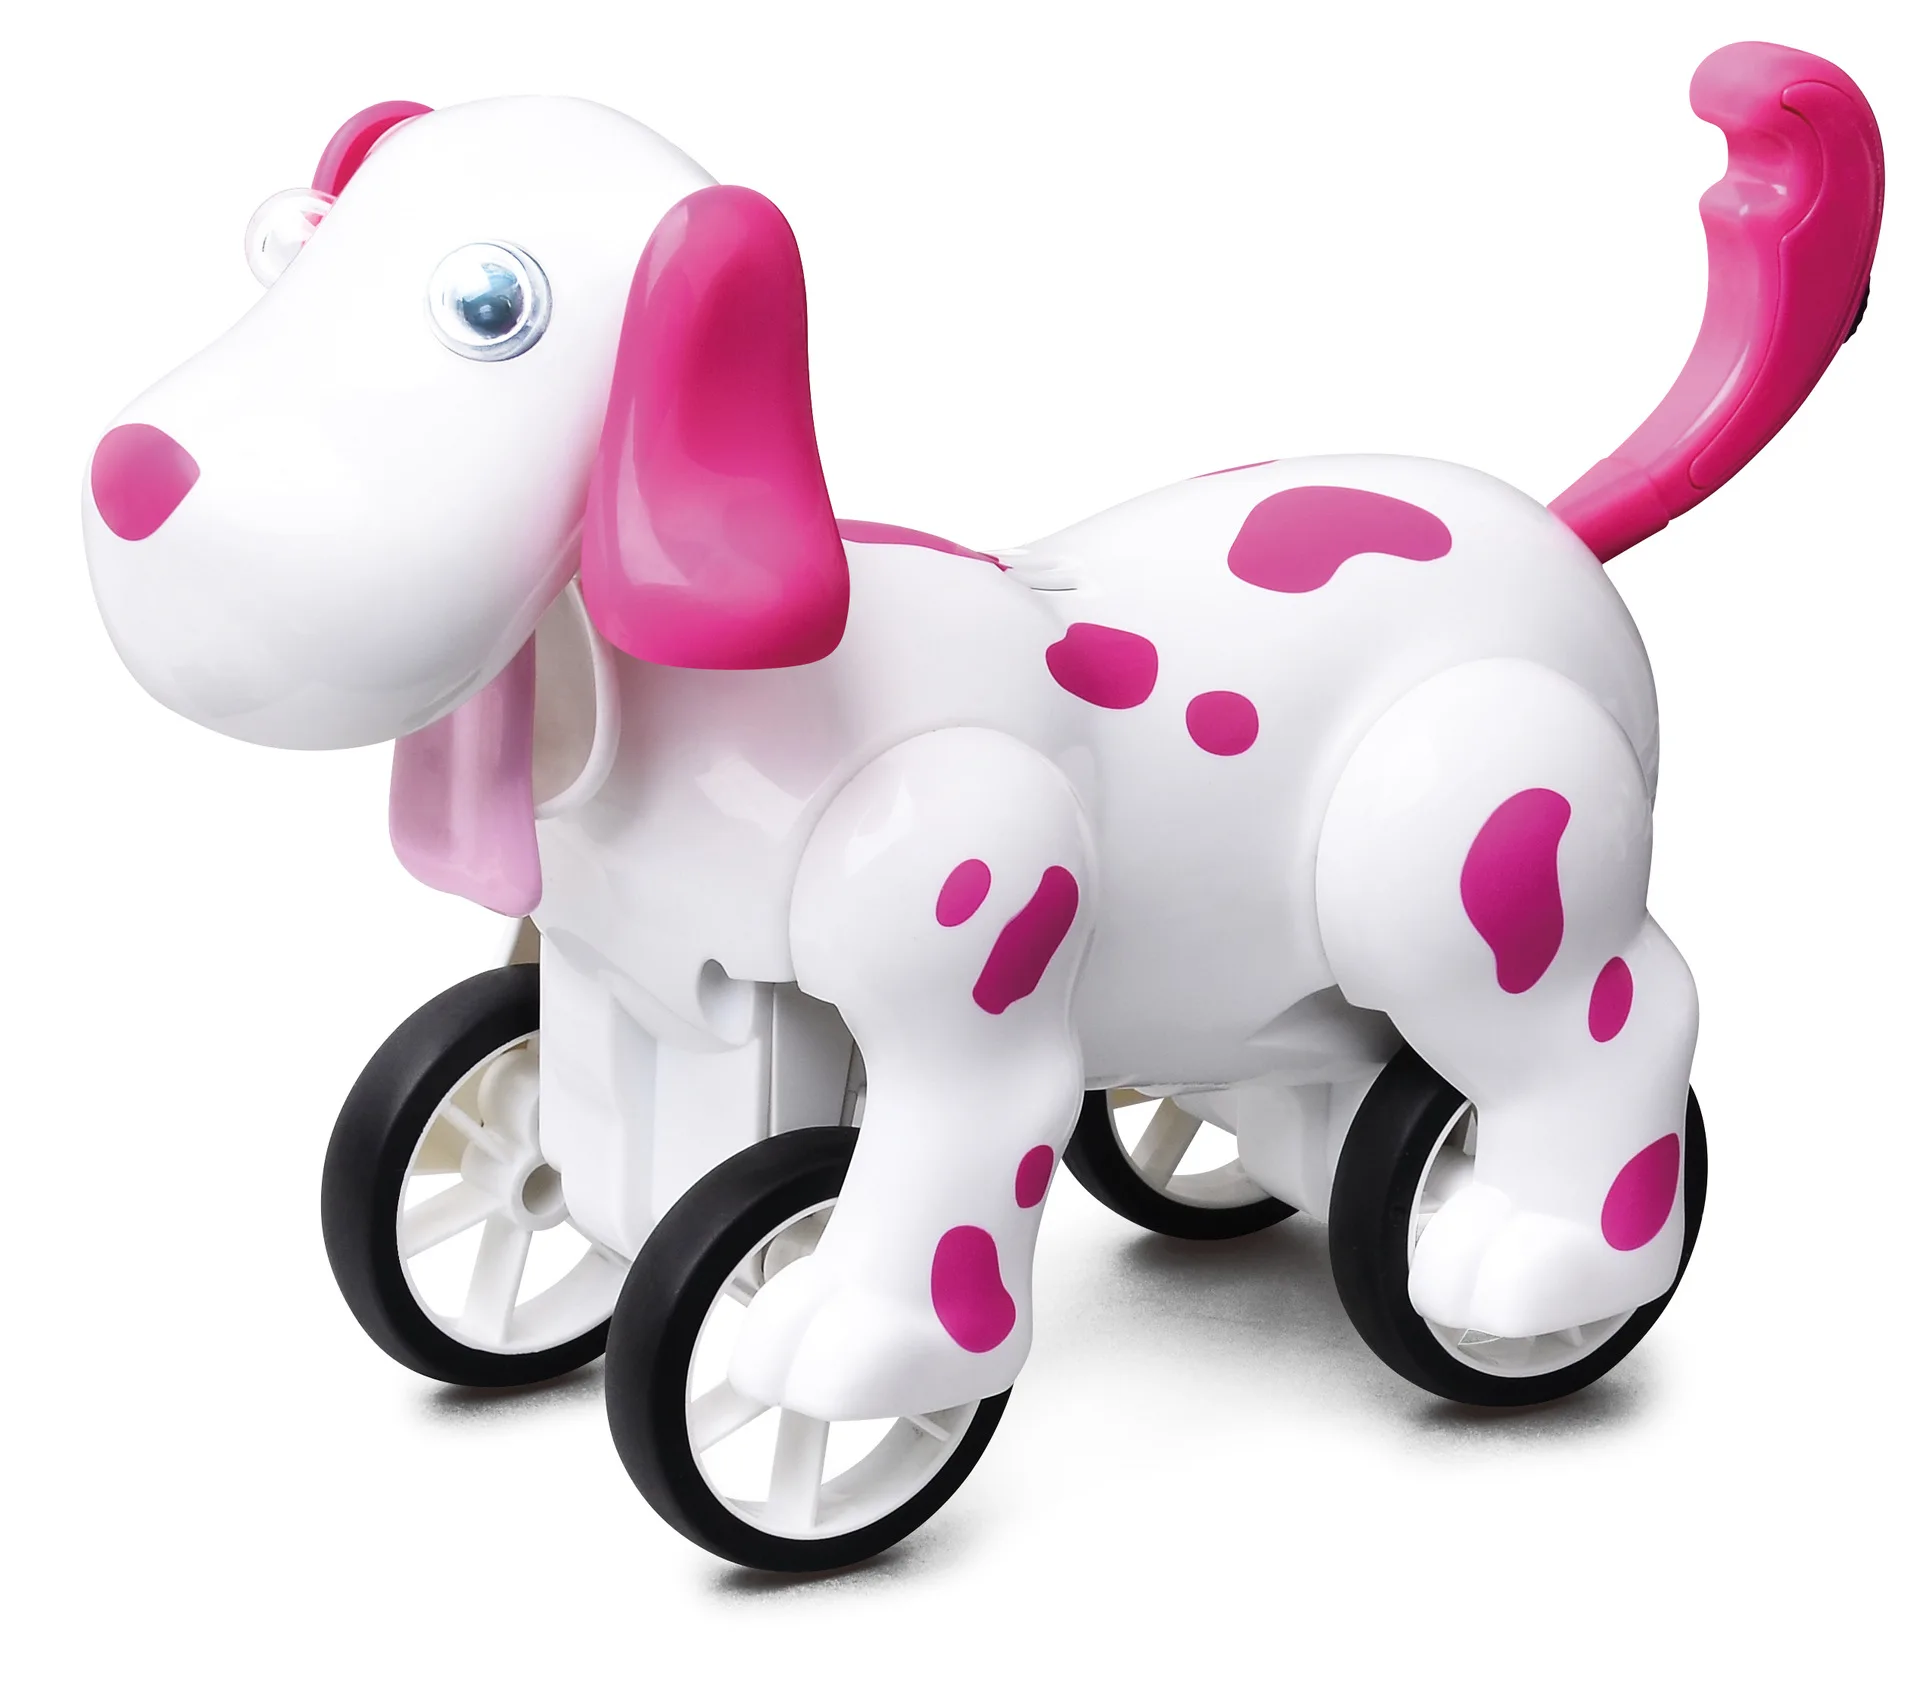 777-601 RC zoomer dog 2,4G беспроводной пульт дистанционного управления умная собака электронный питомец детские развивающие игрушки Робот игрушки Рождественский подарок - Цвет: pink without box